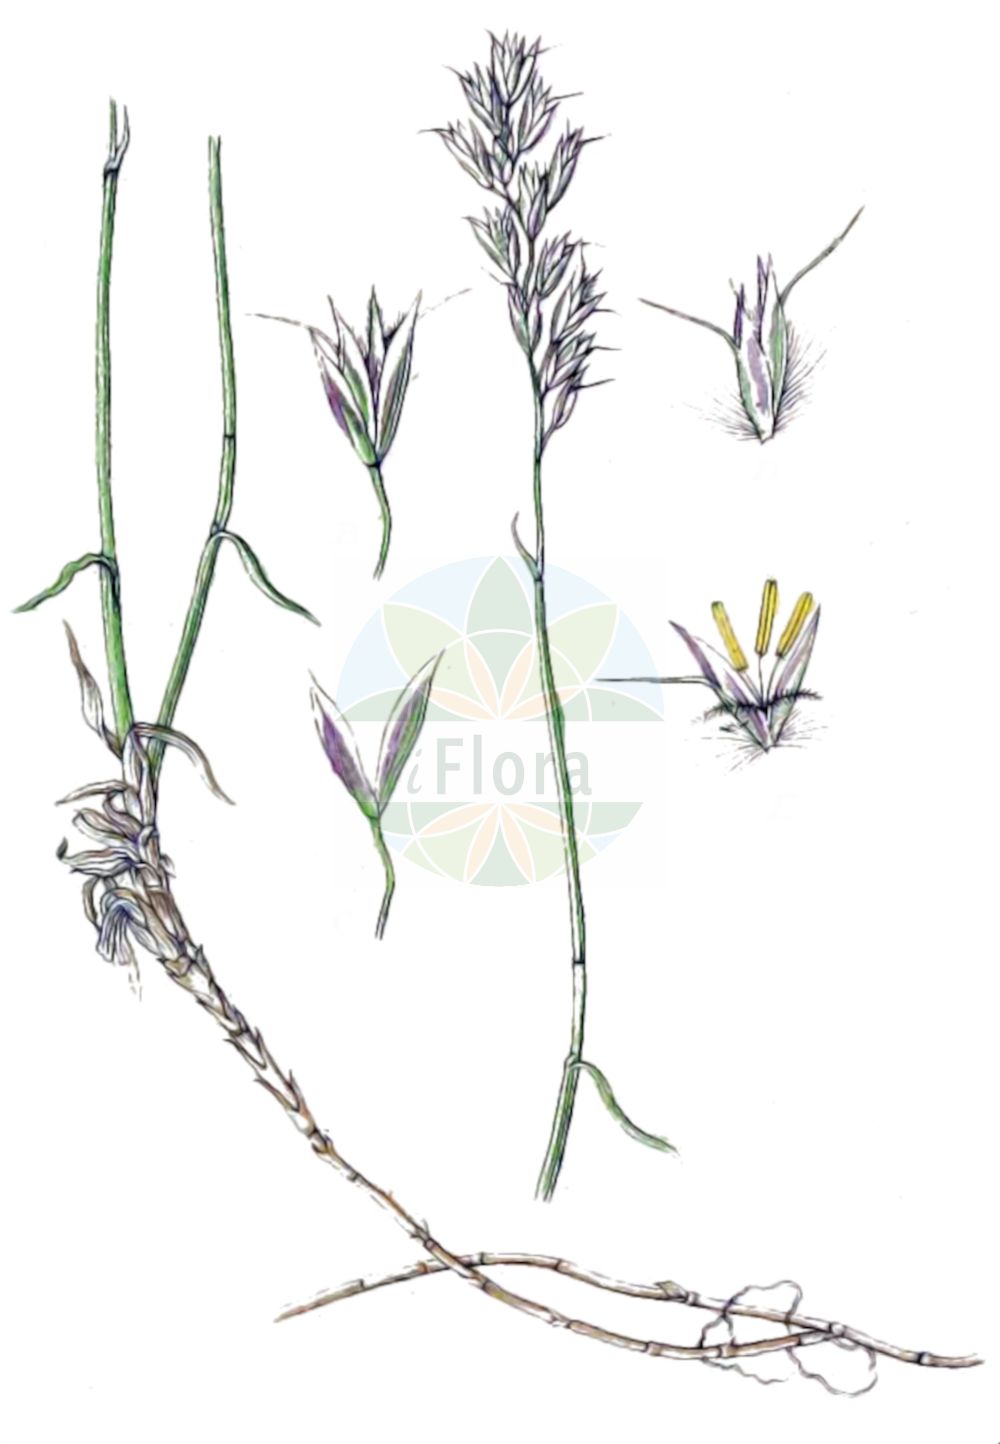 Historische Abbildung von Trisetum distichophyllum (Zweizeiliger Goldhafer - Tufted Hairgrass). Das Bild zeigt Blatt, Bluete, Frucht und Same. ---- Historical Drawing of Trisetum distichophyllum (Zweizeiliger Goldhafer - Tufted Hairgrass). The image is showing leaf, flower, fruit and seed.(Trisetum distichophyllum,Zweizeiliger Goldhafer,Tufted Hairgrass,Avena distichophylla,Trisetaria distichophylla,Trisetum albanicum,Trisetum distichophyllum,Zweizeiliger Goldhafer,Tufted Hairgrass,Trisetum,Goldhafer,Oatgrass,Poaceae,Süßgräser,Grass family,Blatt,Bluete,Frucht,Same,leaf,flower,fruit,seed,Sturm (1796f))